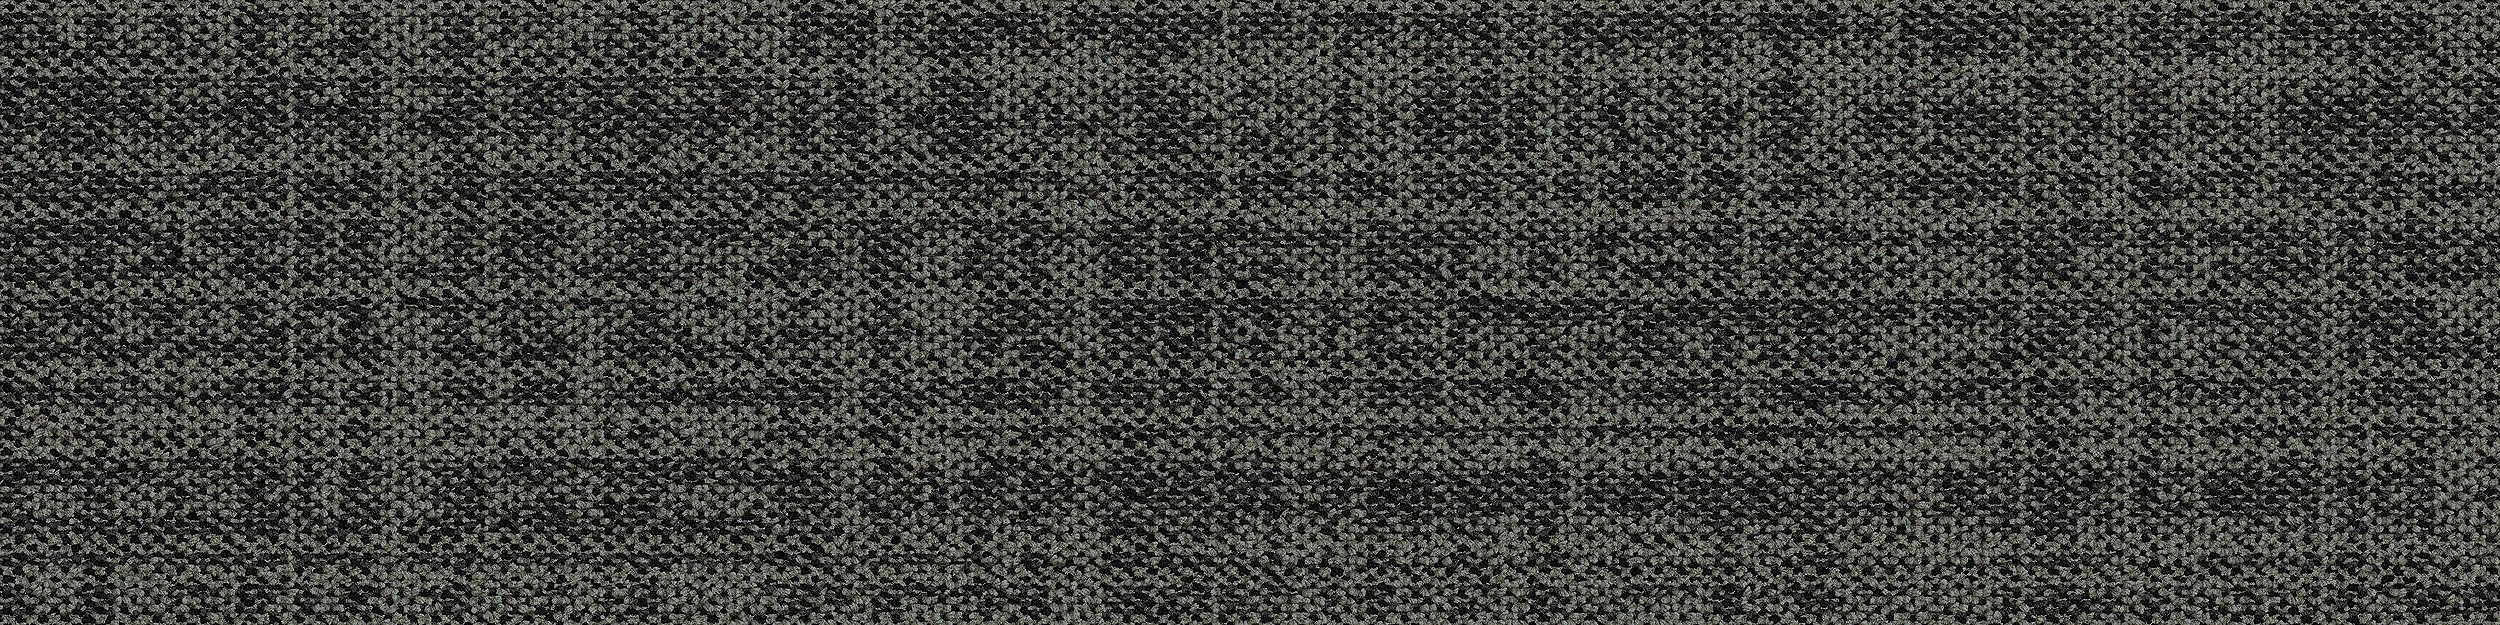 Source Material Carpet Tile In Iron numéro d’image 4